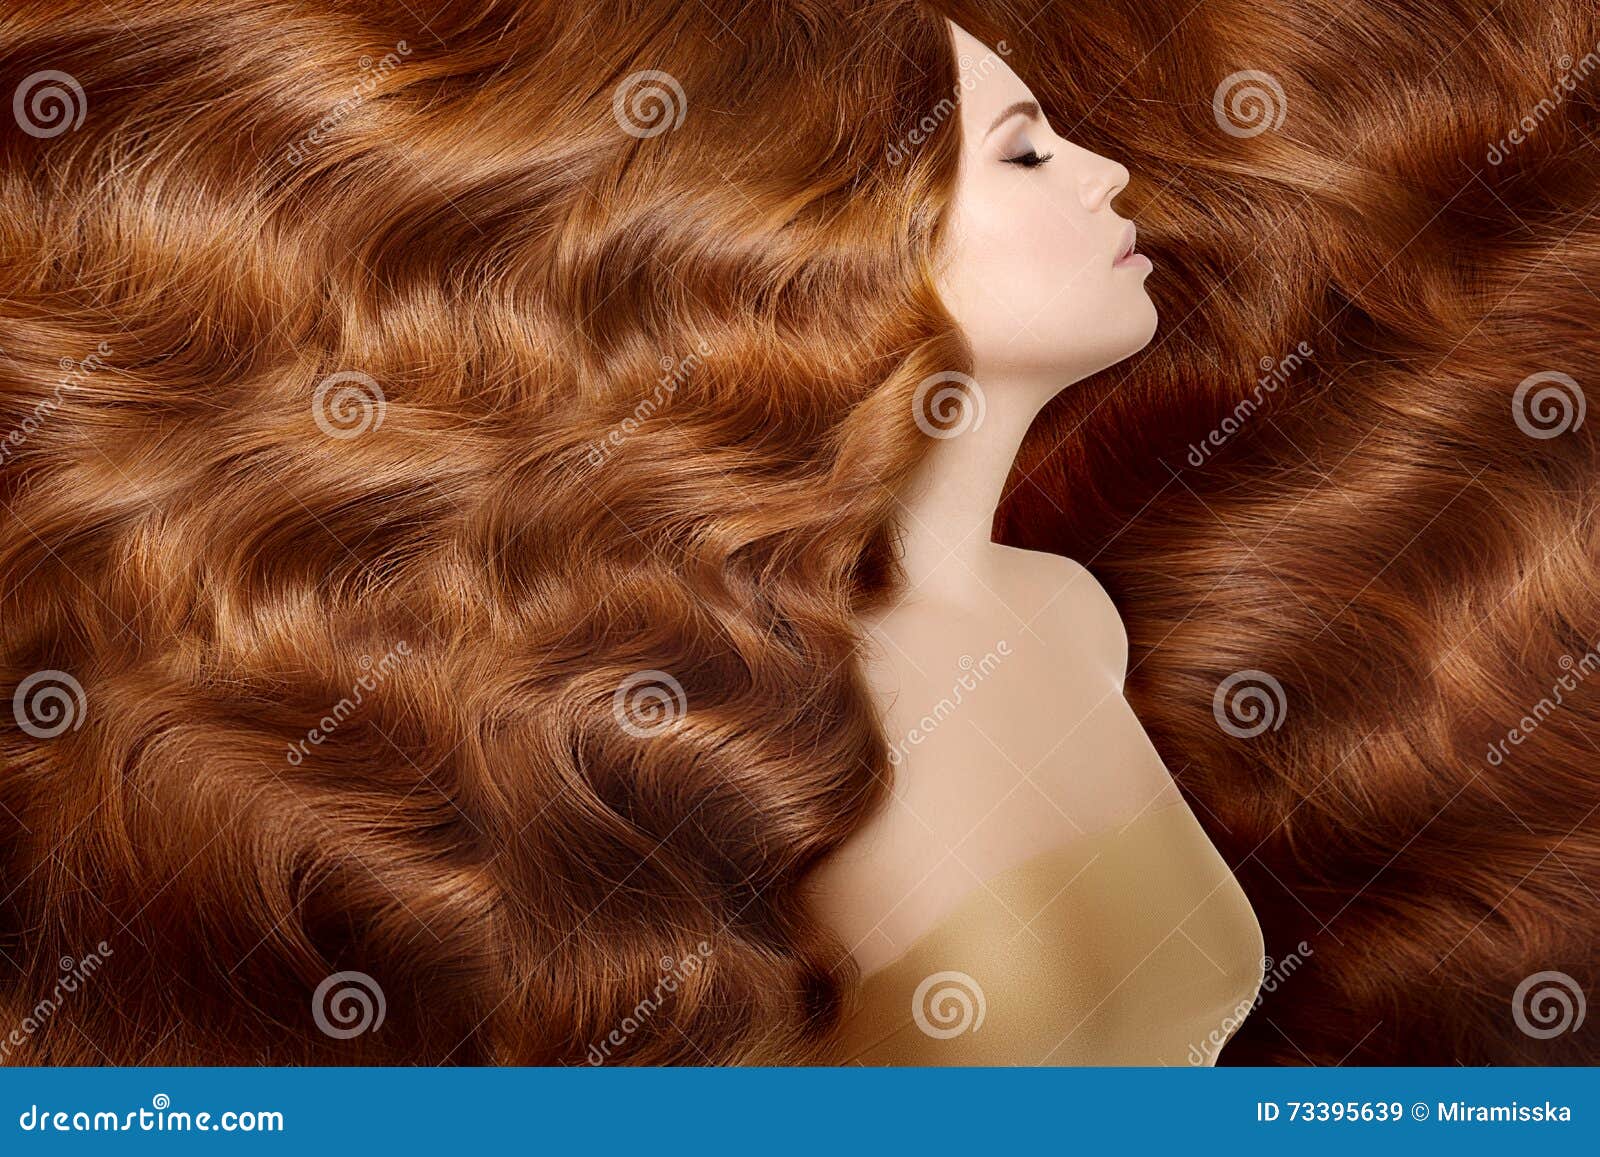 HAZELNUT MELT & BIG WAVES .... - Bernad Hair Salon & Make Up | Facebook